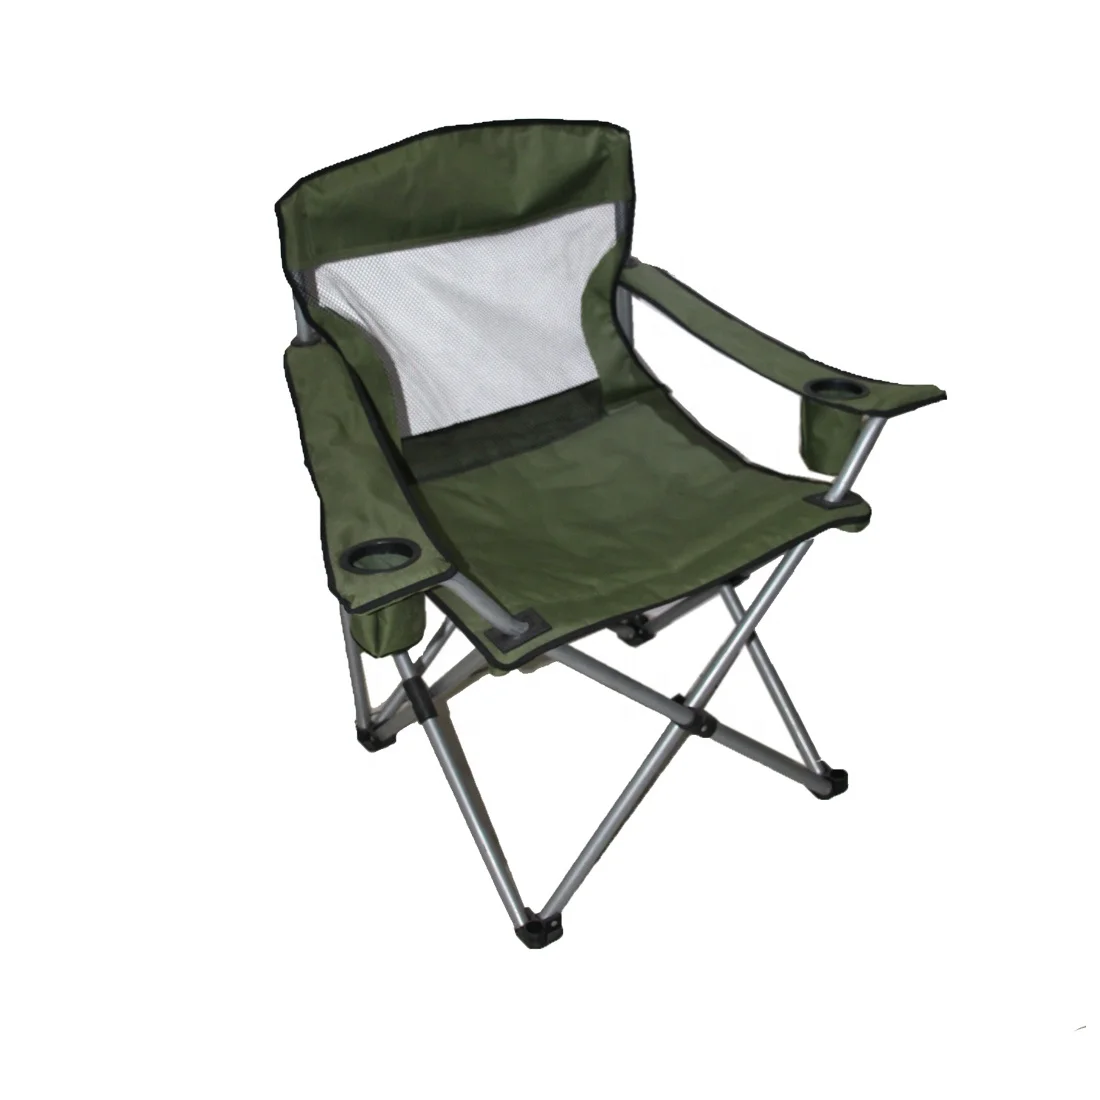 Alightup Chaise de Camping Pliantes Confortable avec Accoudoirs,Chaise de Plage Fauteuil Pliable Légère avec Boisson et Sac de Transport,Fauteuil de Peche Gris